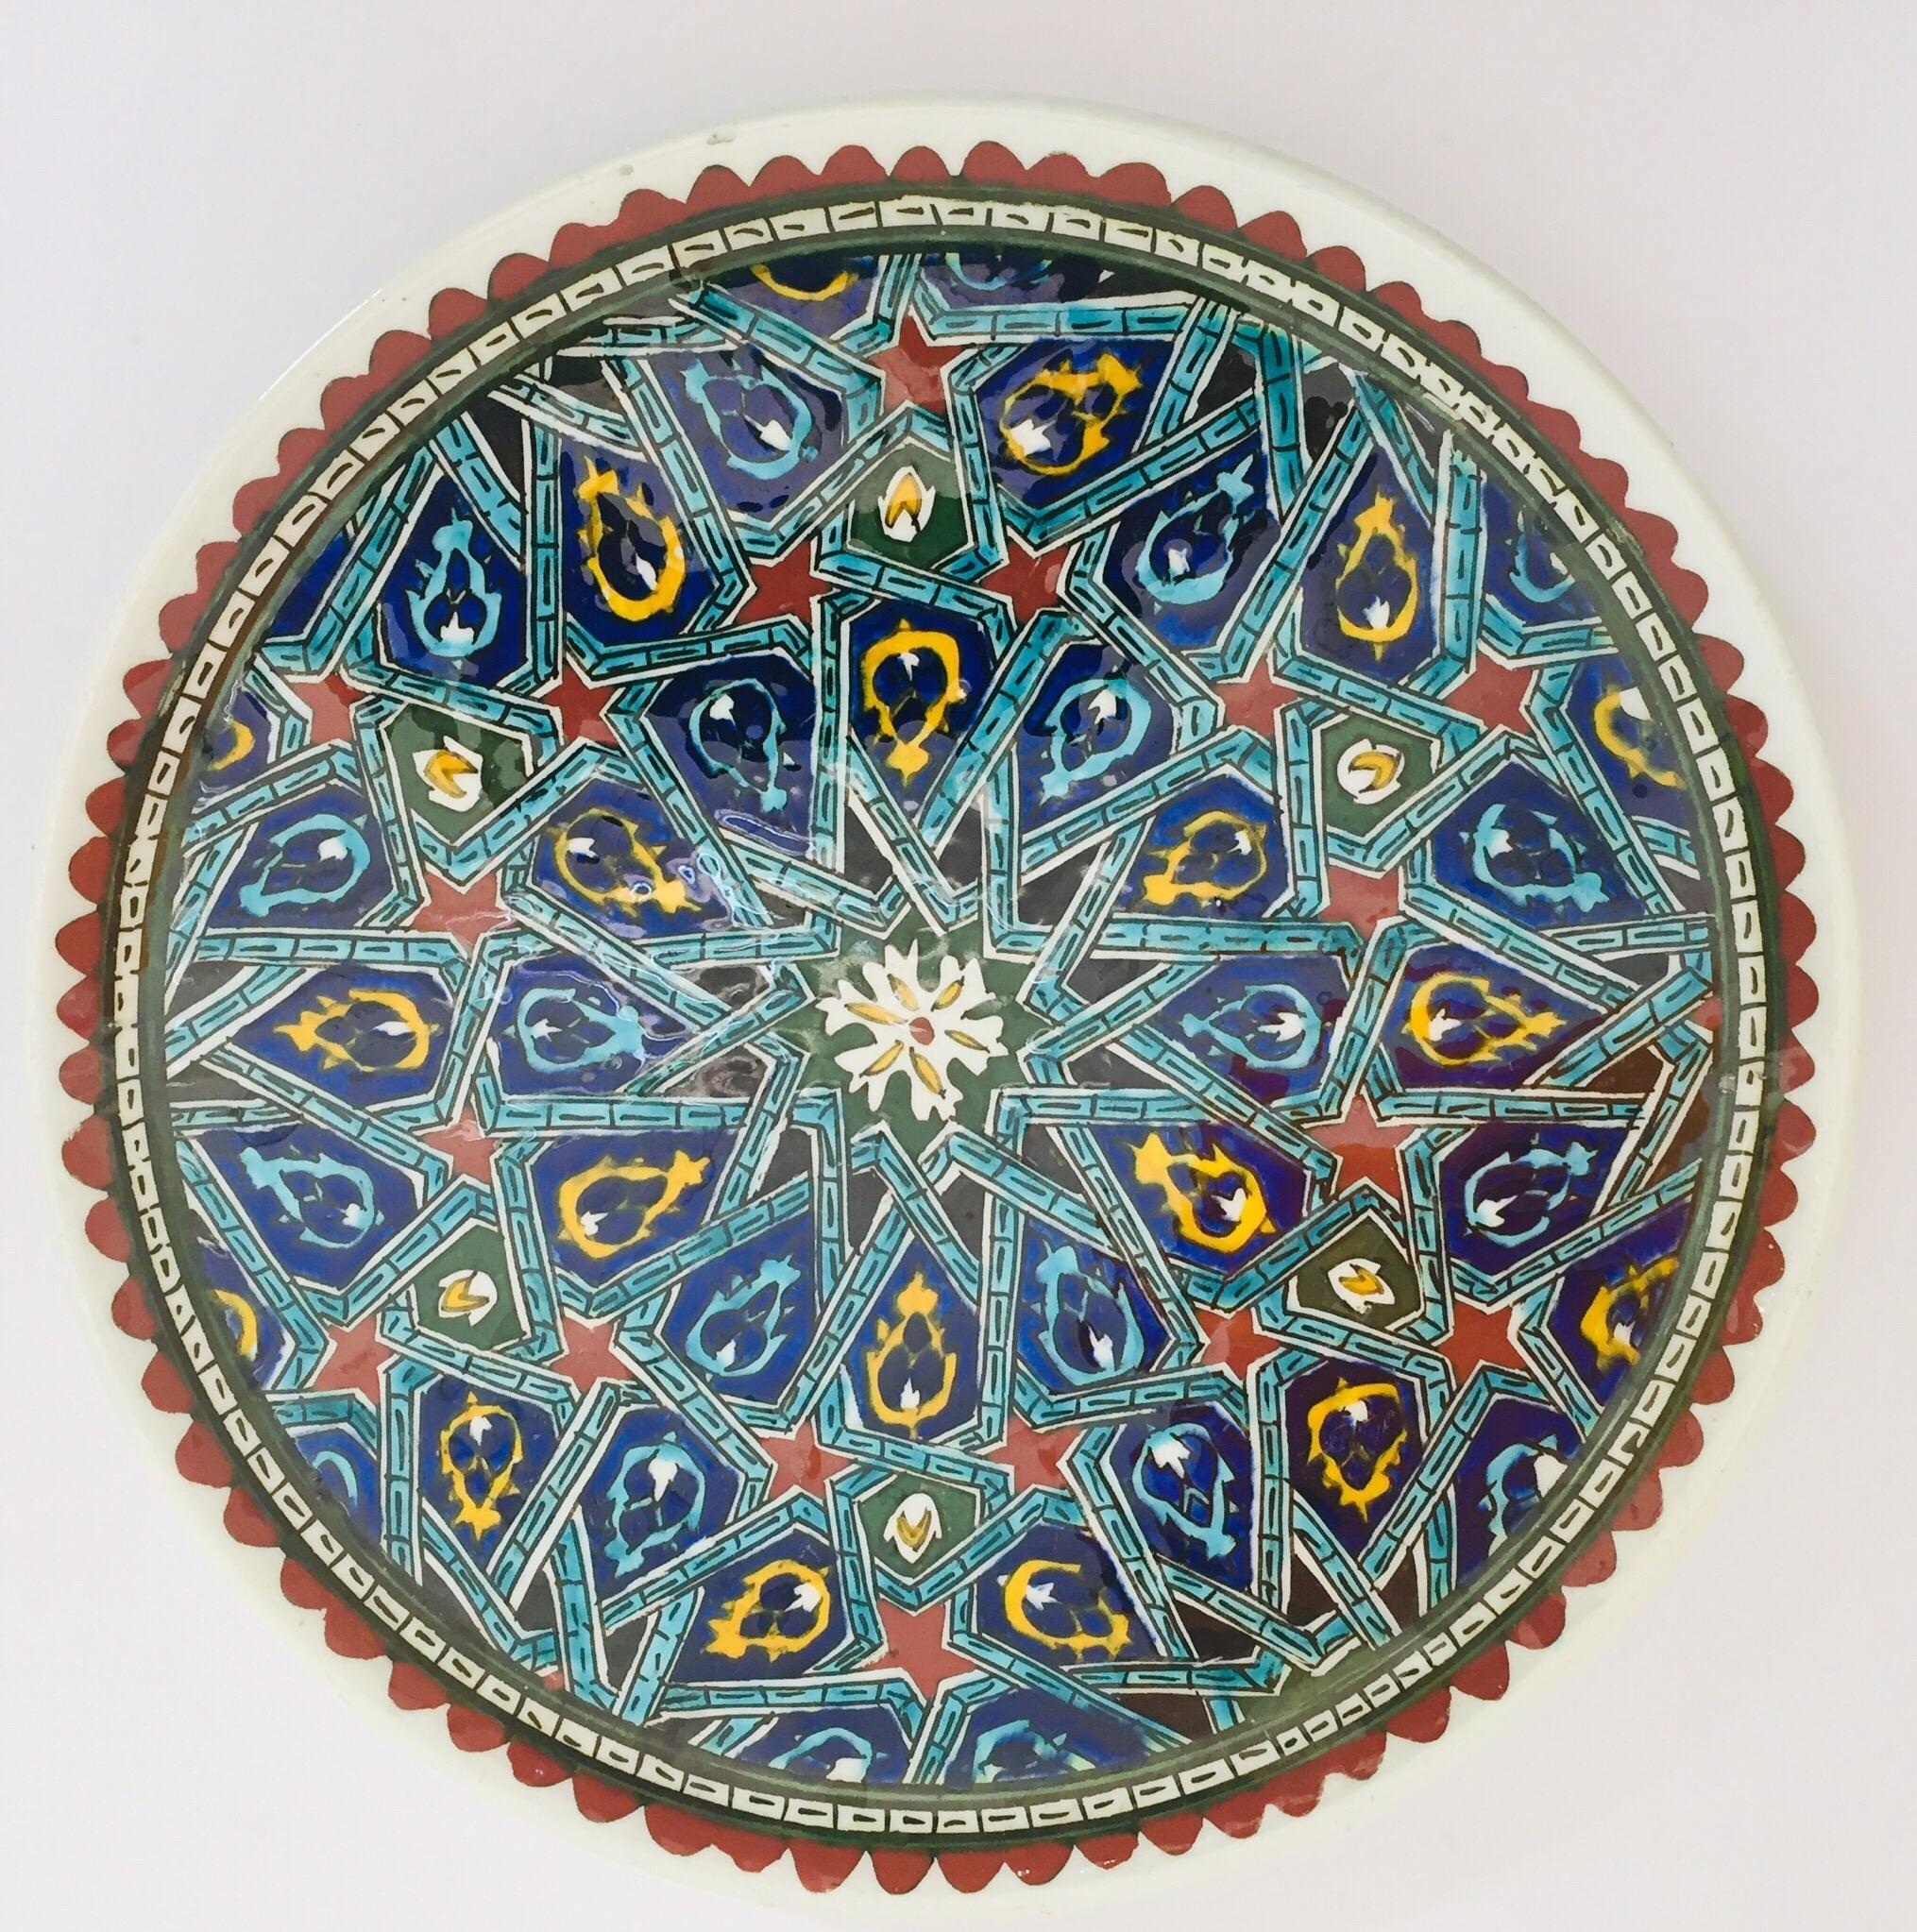 Plaque décorative murale en céramique polychrome peinte à la main et fabriquée artisanalement, avec un motif floral ottoman polychrome.
Il s'agit d'une assiette mauresque complexe, peinte à la main, fabriquée en Turquie.
La Turquie est célèbre pour